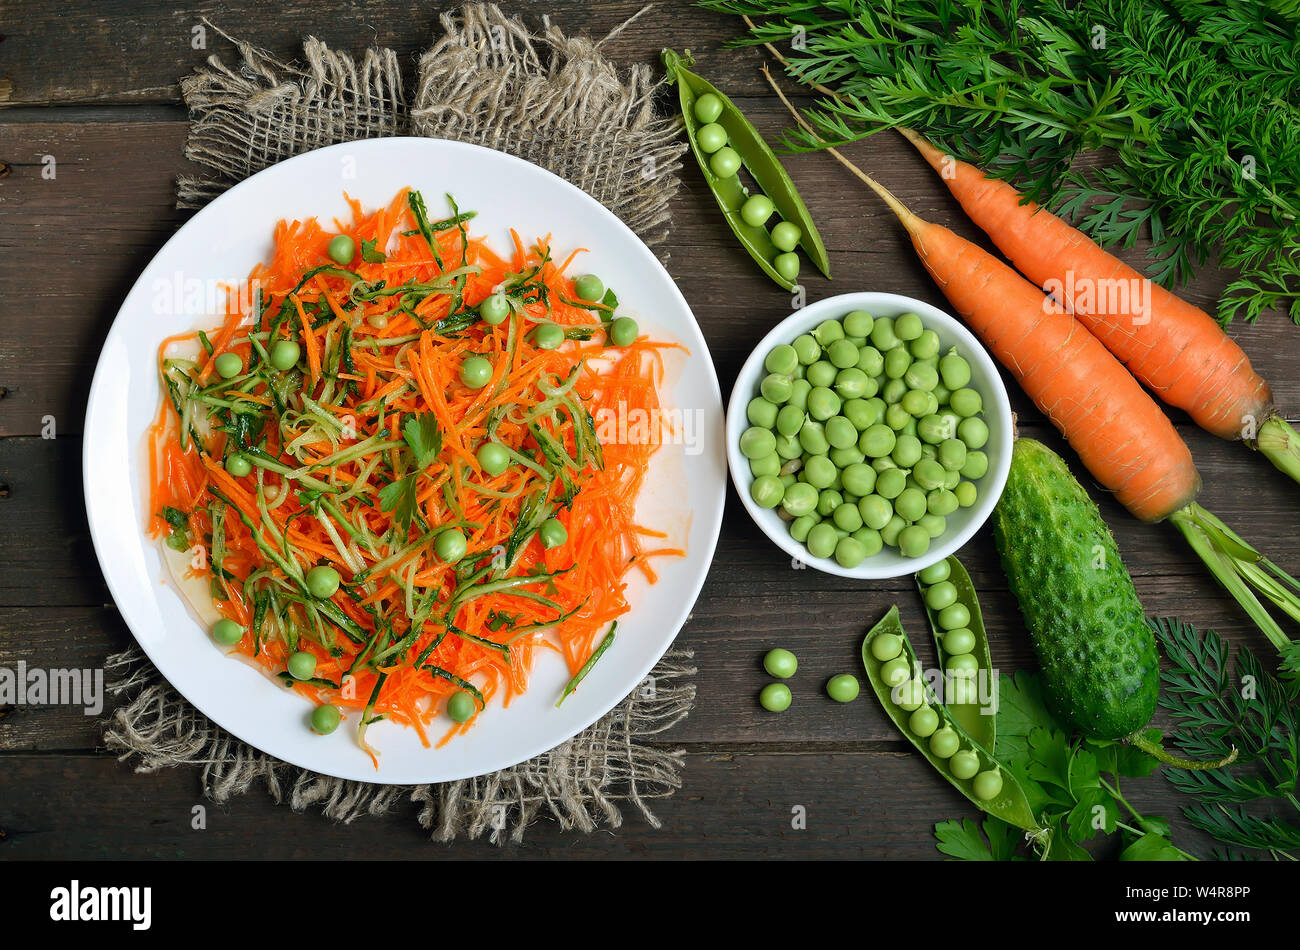 Deliziosa Insalata di carote, cetriolo, pinoli e piselli verdi sulla piastra bianca, vista dall'alto. Ortaggi freschi sul tavolo di legno, vista dall'alto Foto Stock